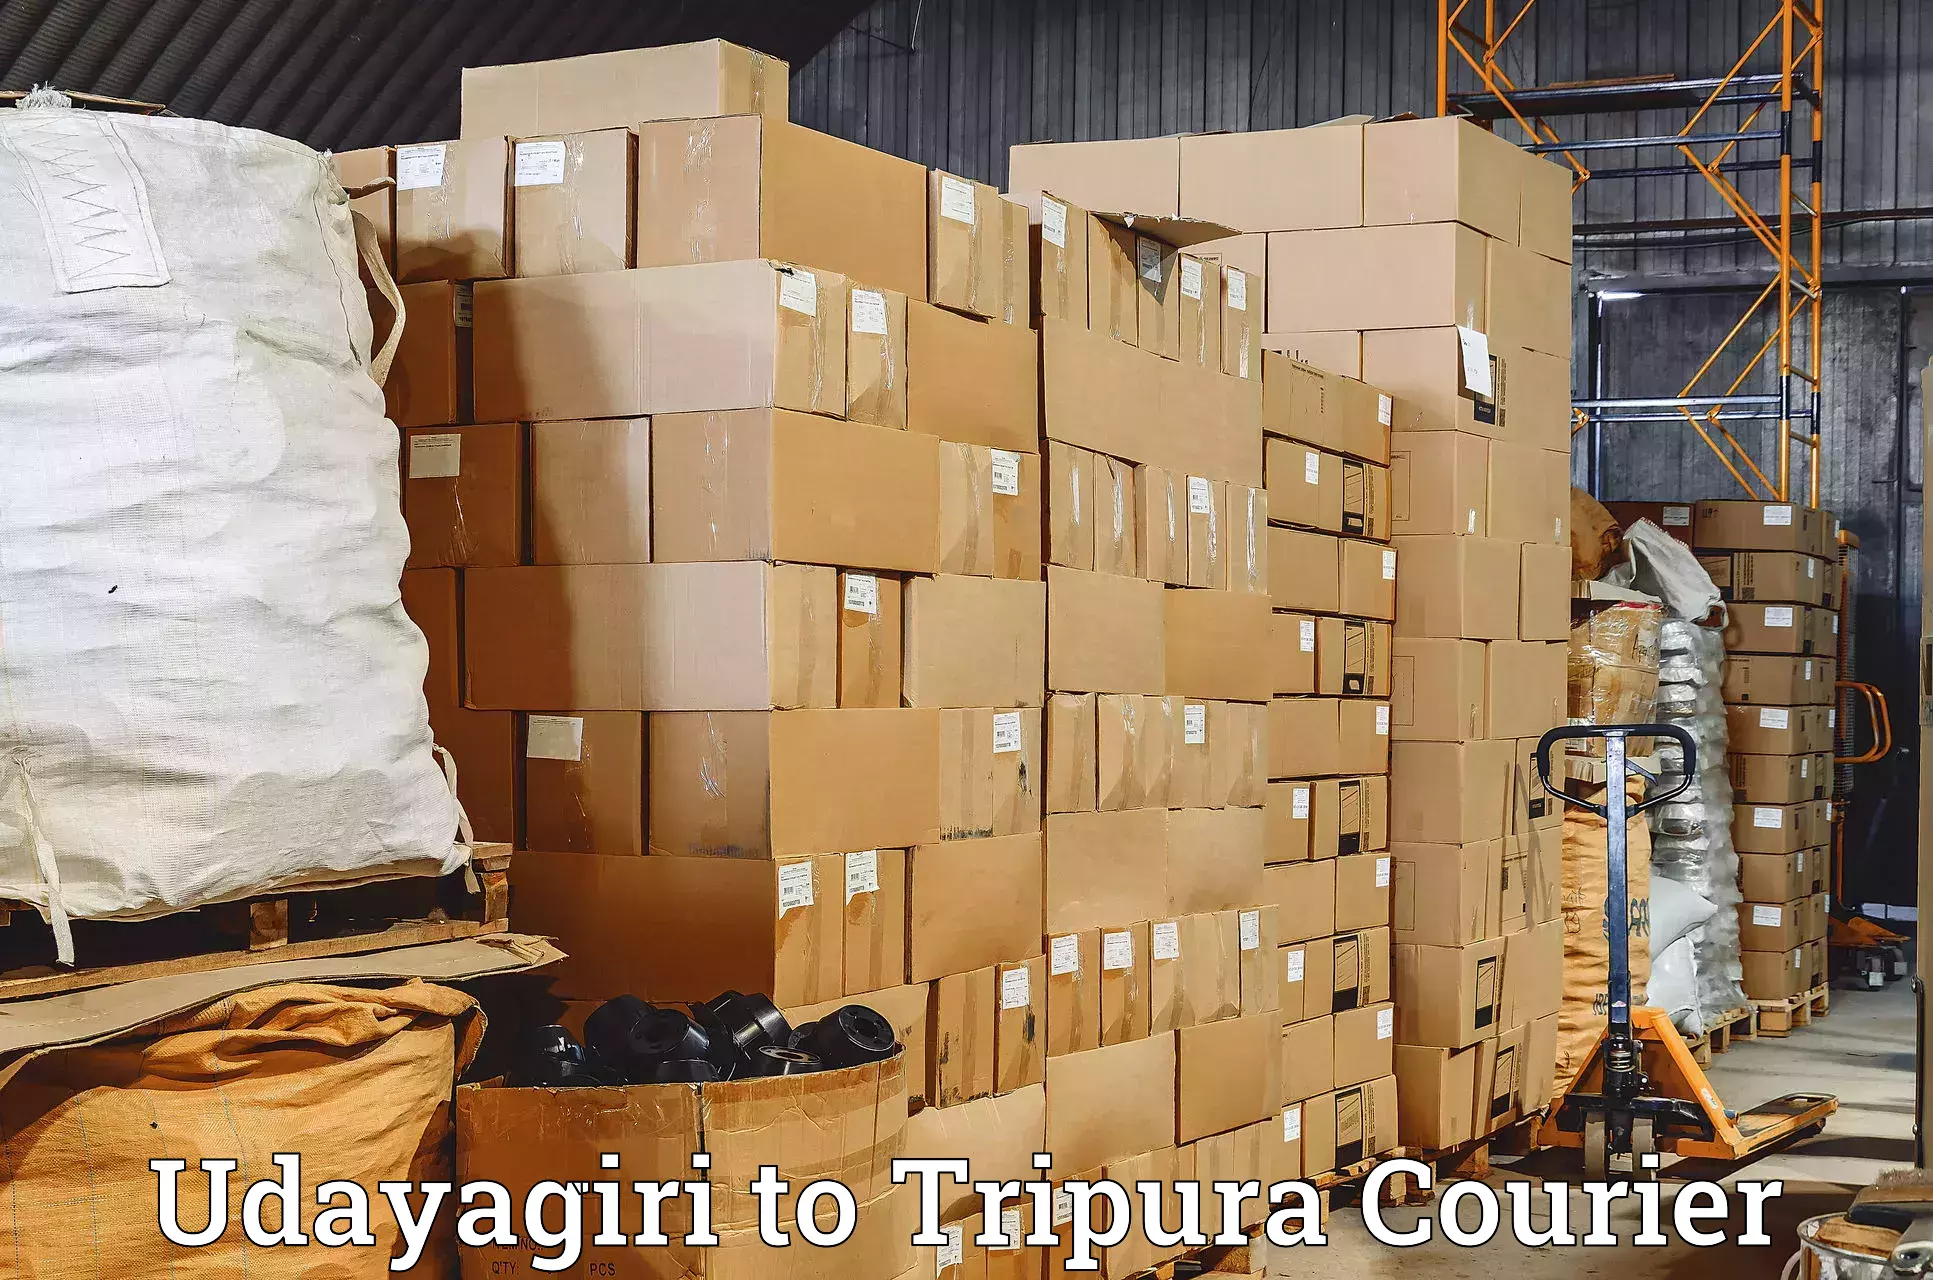 Digital courier platforms Udayagiri to Bishalgarh